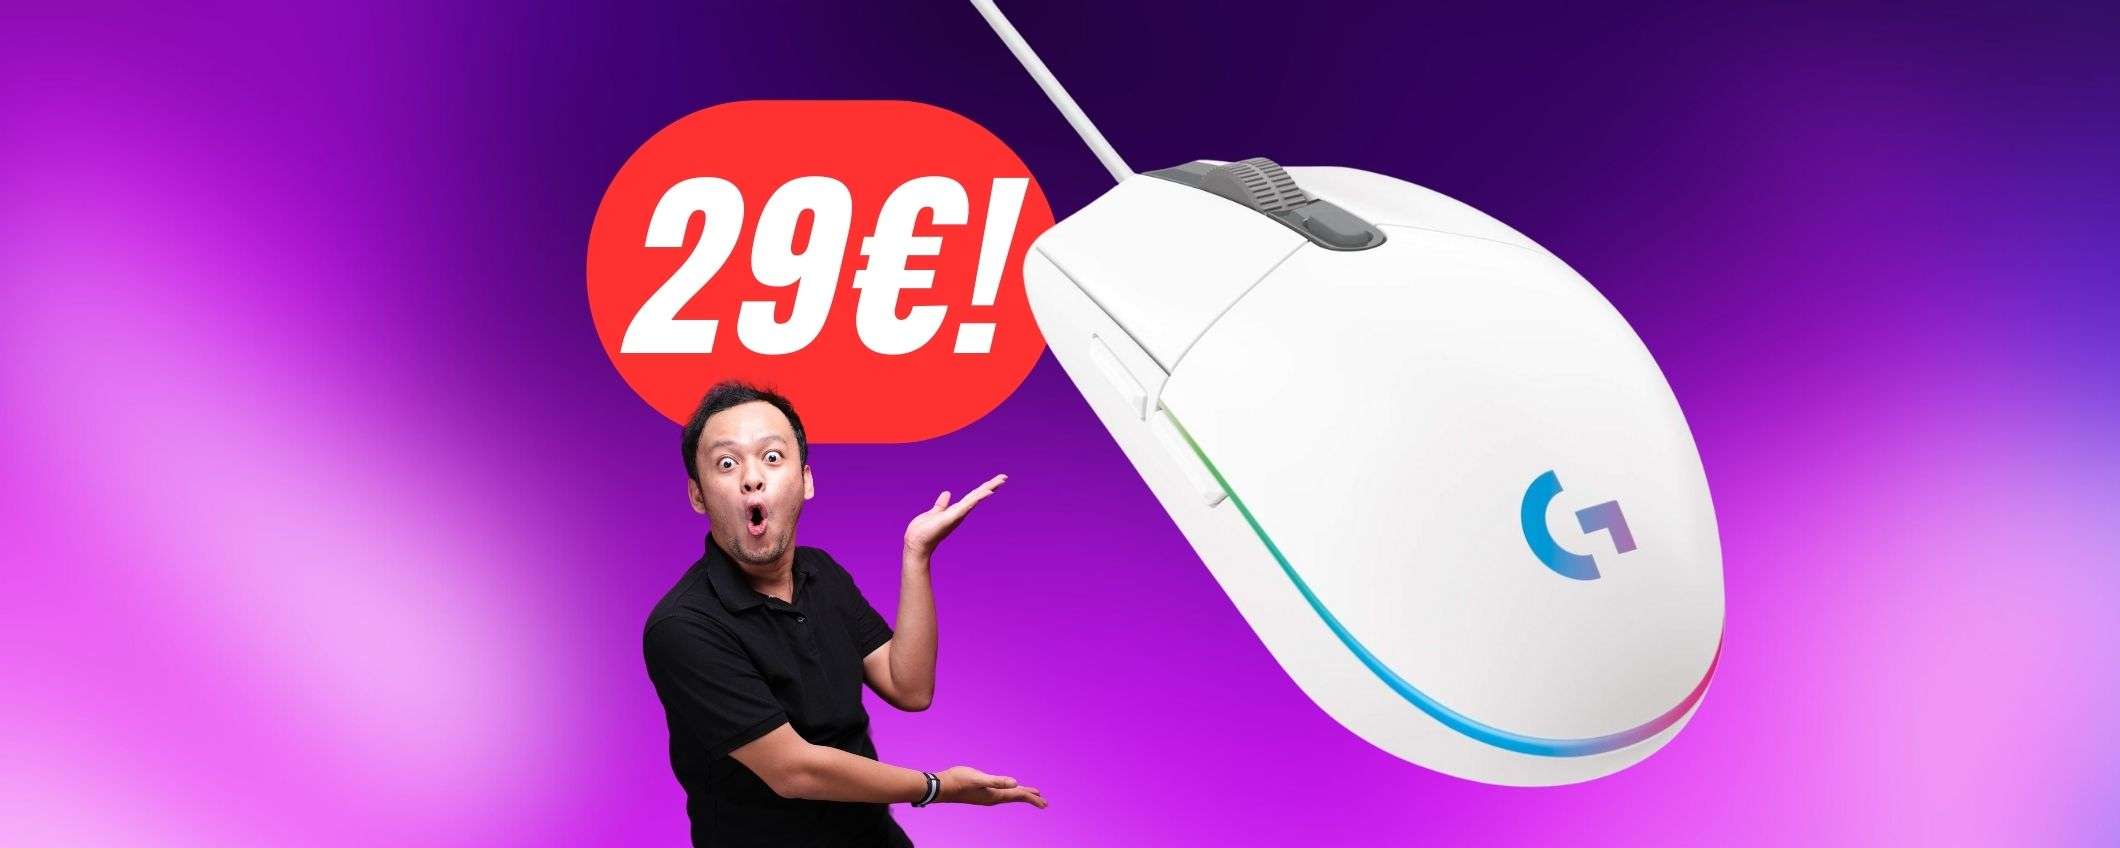 Questo mouse da gaming a 27€ ha tutto ciò che cerchi!